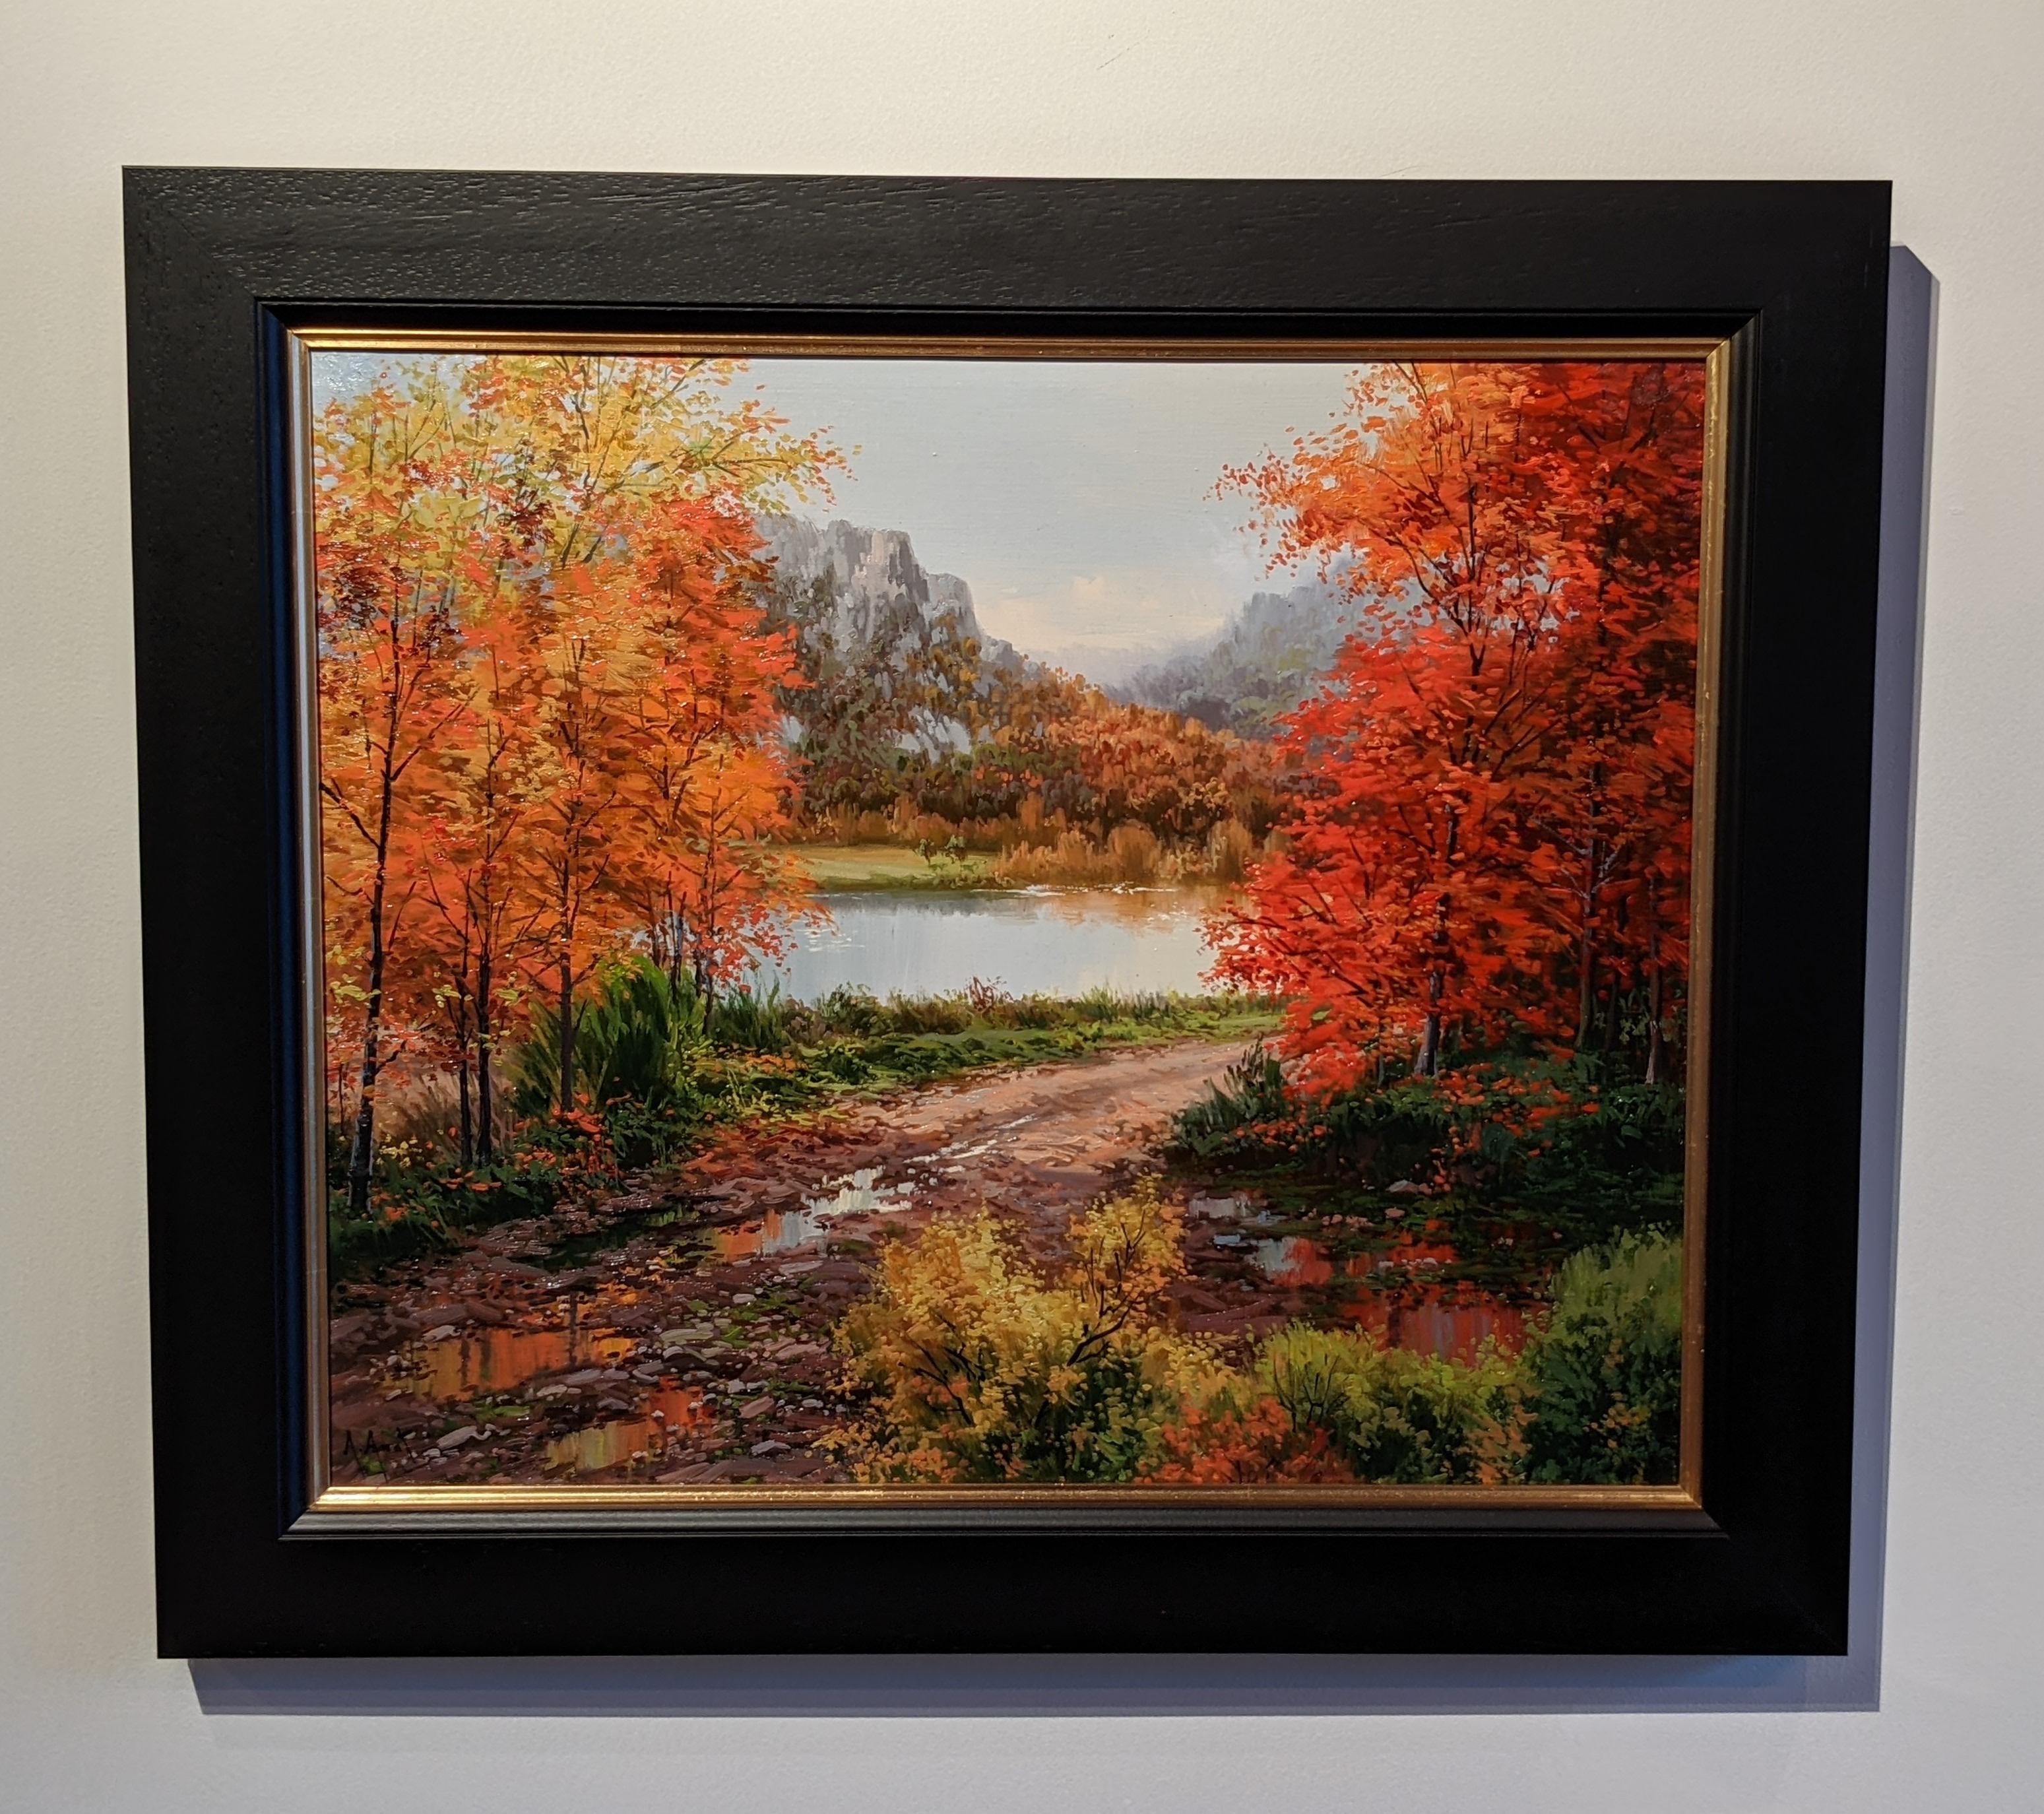 Landscape Painting Arnau Amat - « Autumn View », peinture contemporaine de paysage coloré avec arbres et rivière